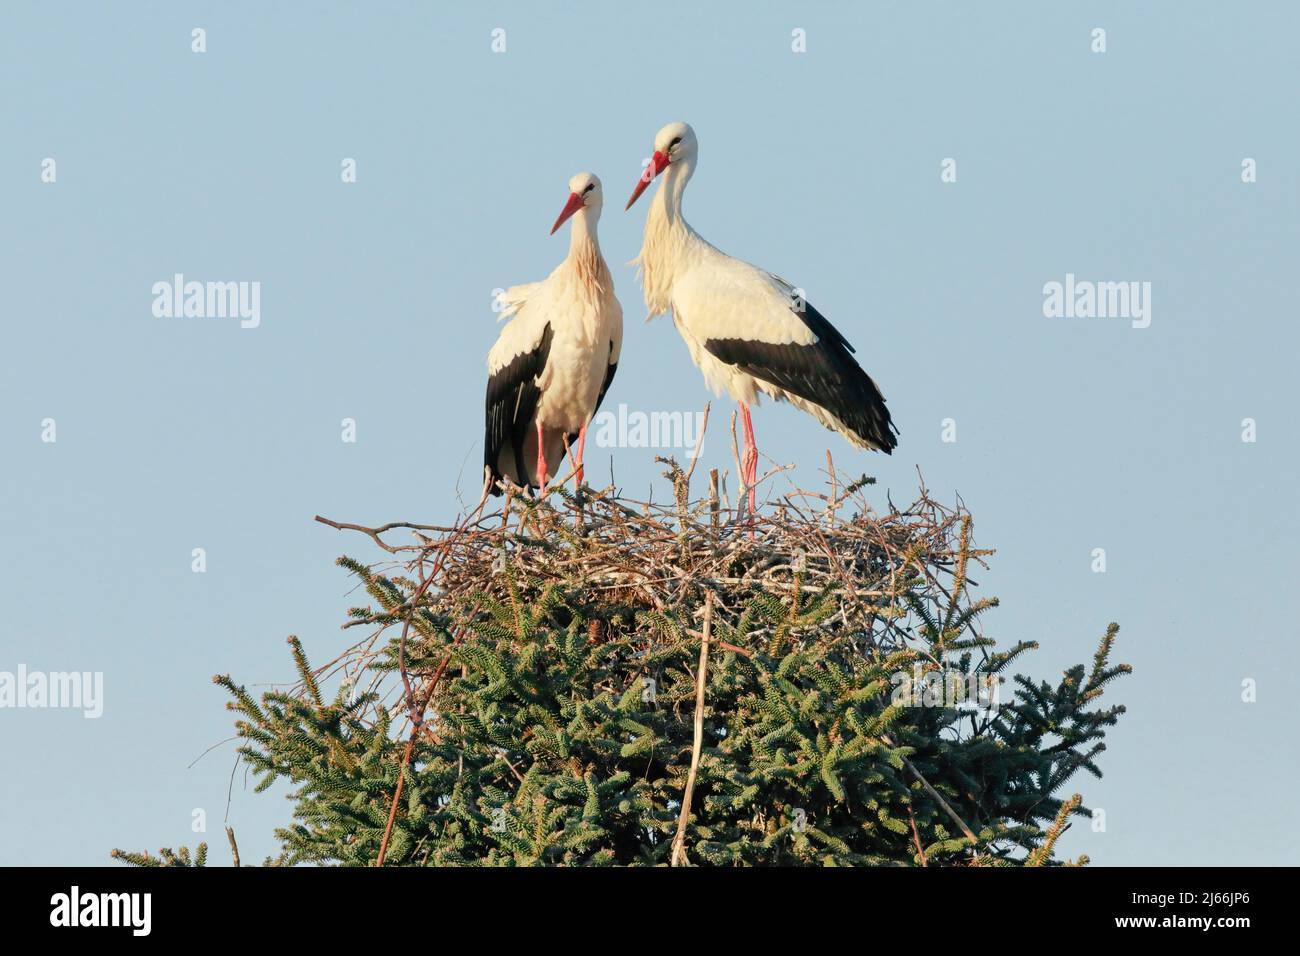 Weissstorchen Paar steht waehrend der Paarungszeit in ihrem Nest inmitten der Baumkrone einer grossen Fichte, Fruehling, Oetwil am See, Kanton Stock Photo